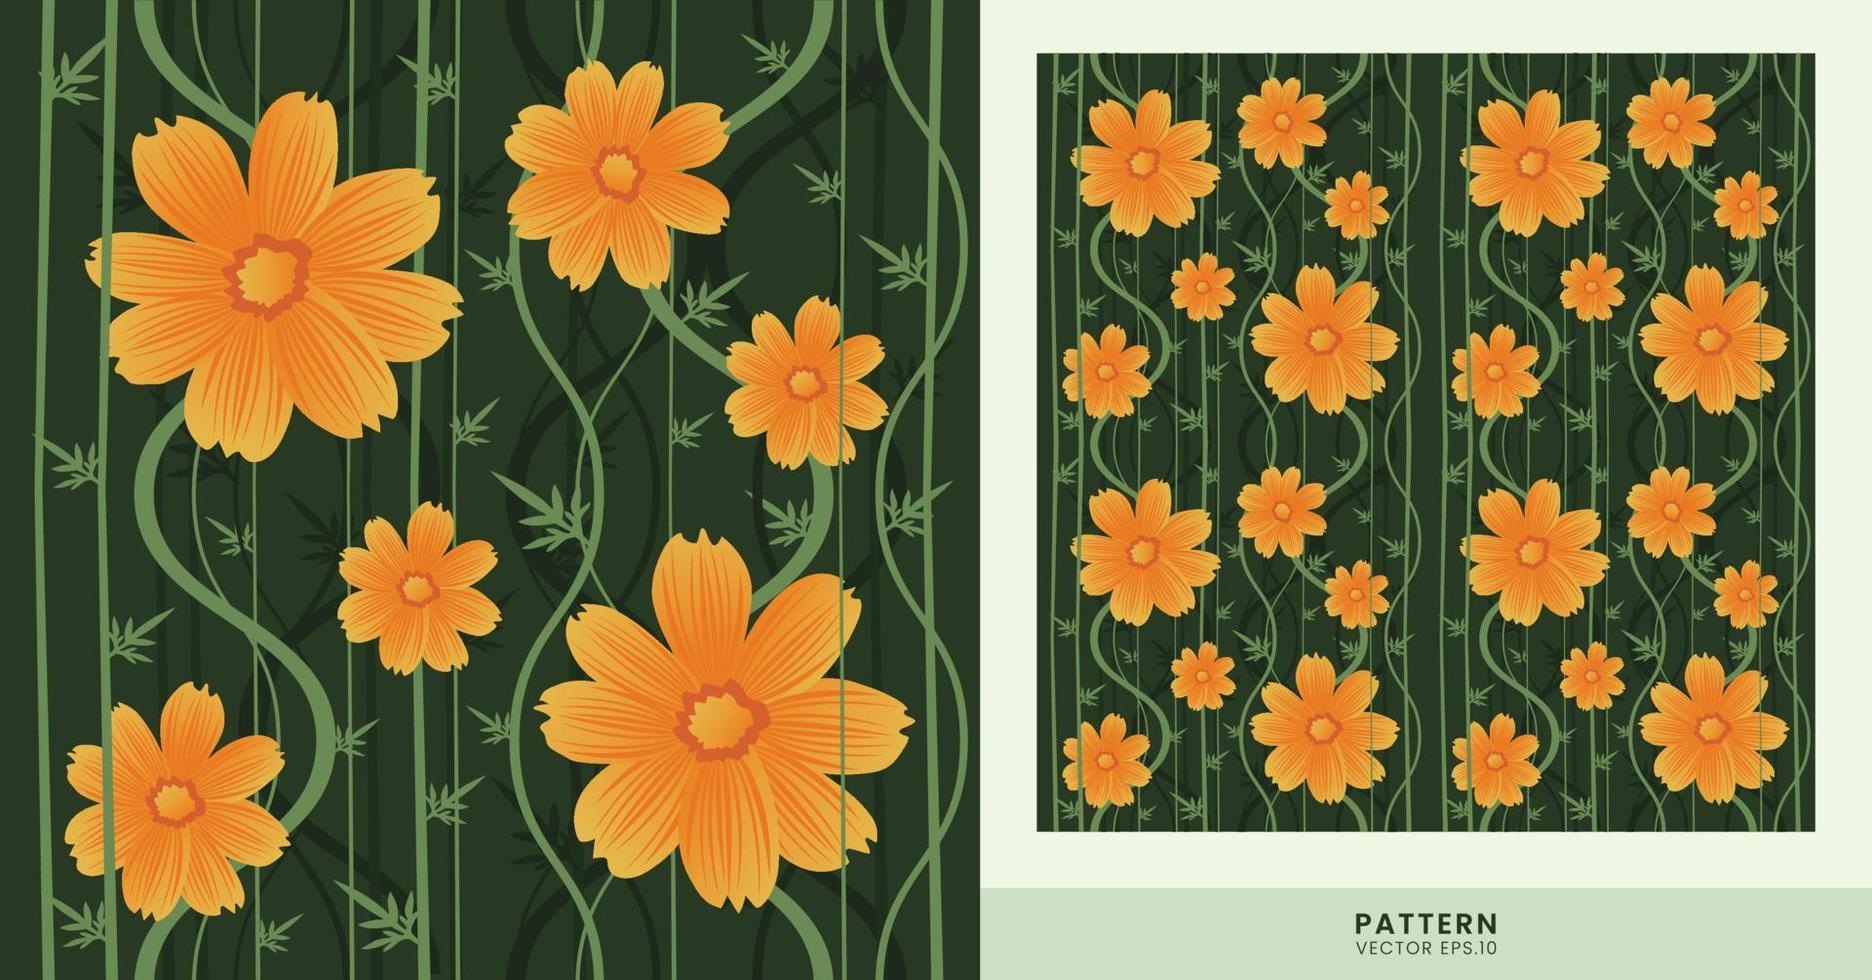 het rankpatroon met bloeiende gele bloemen is erg mooi, kan worden gebruikt voor kledingpatronen, achtergronden en andere ontwerpbehoeften. vector